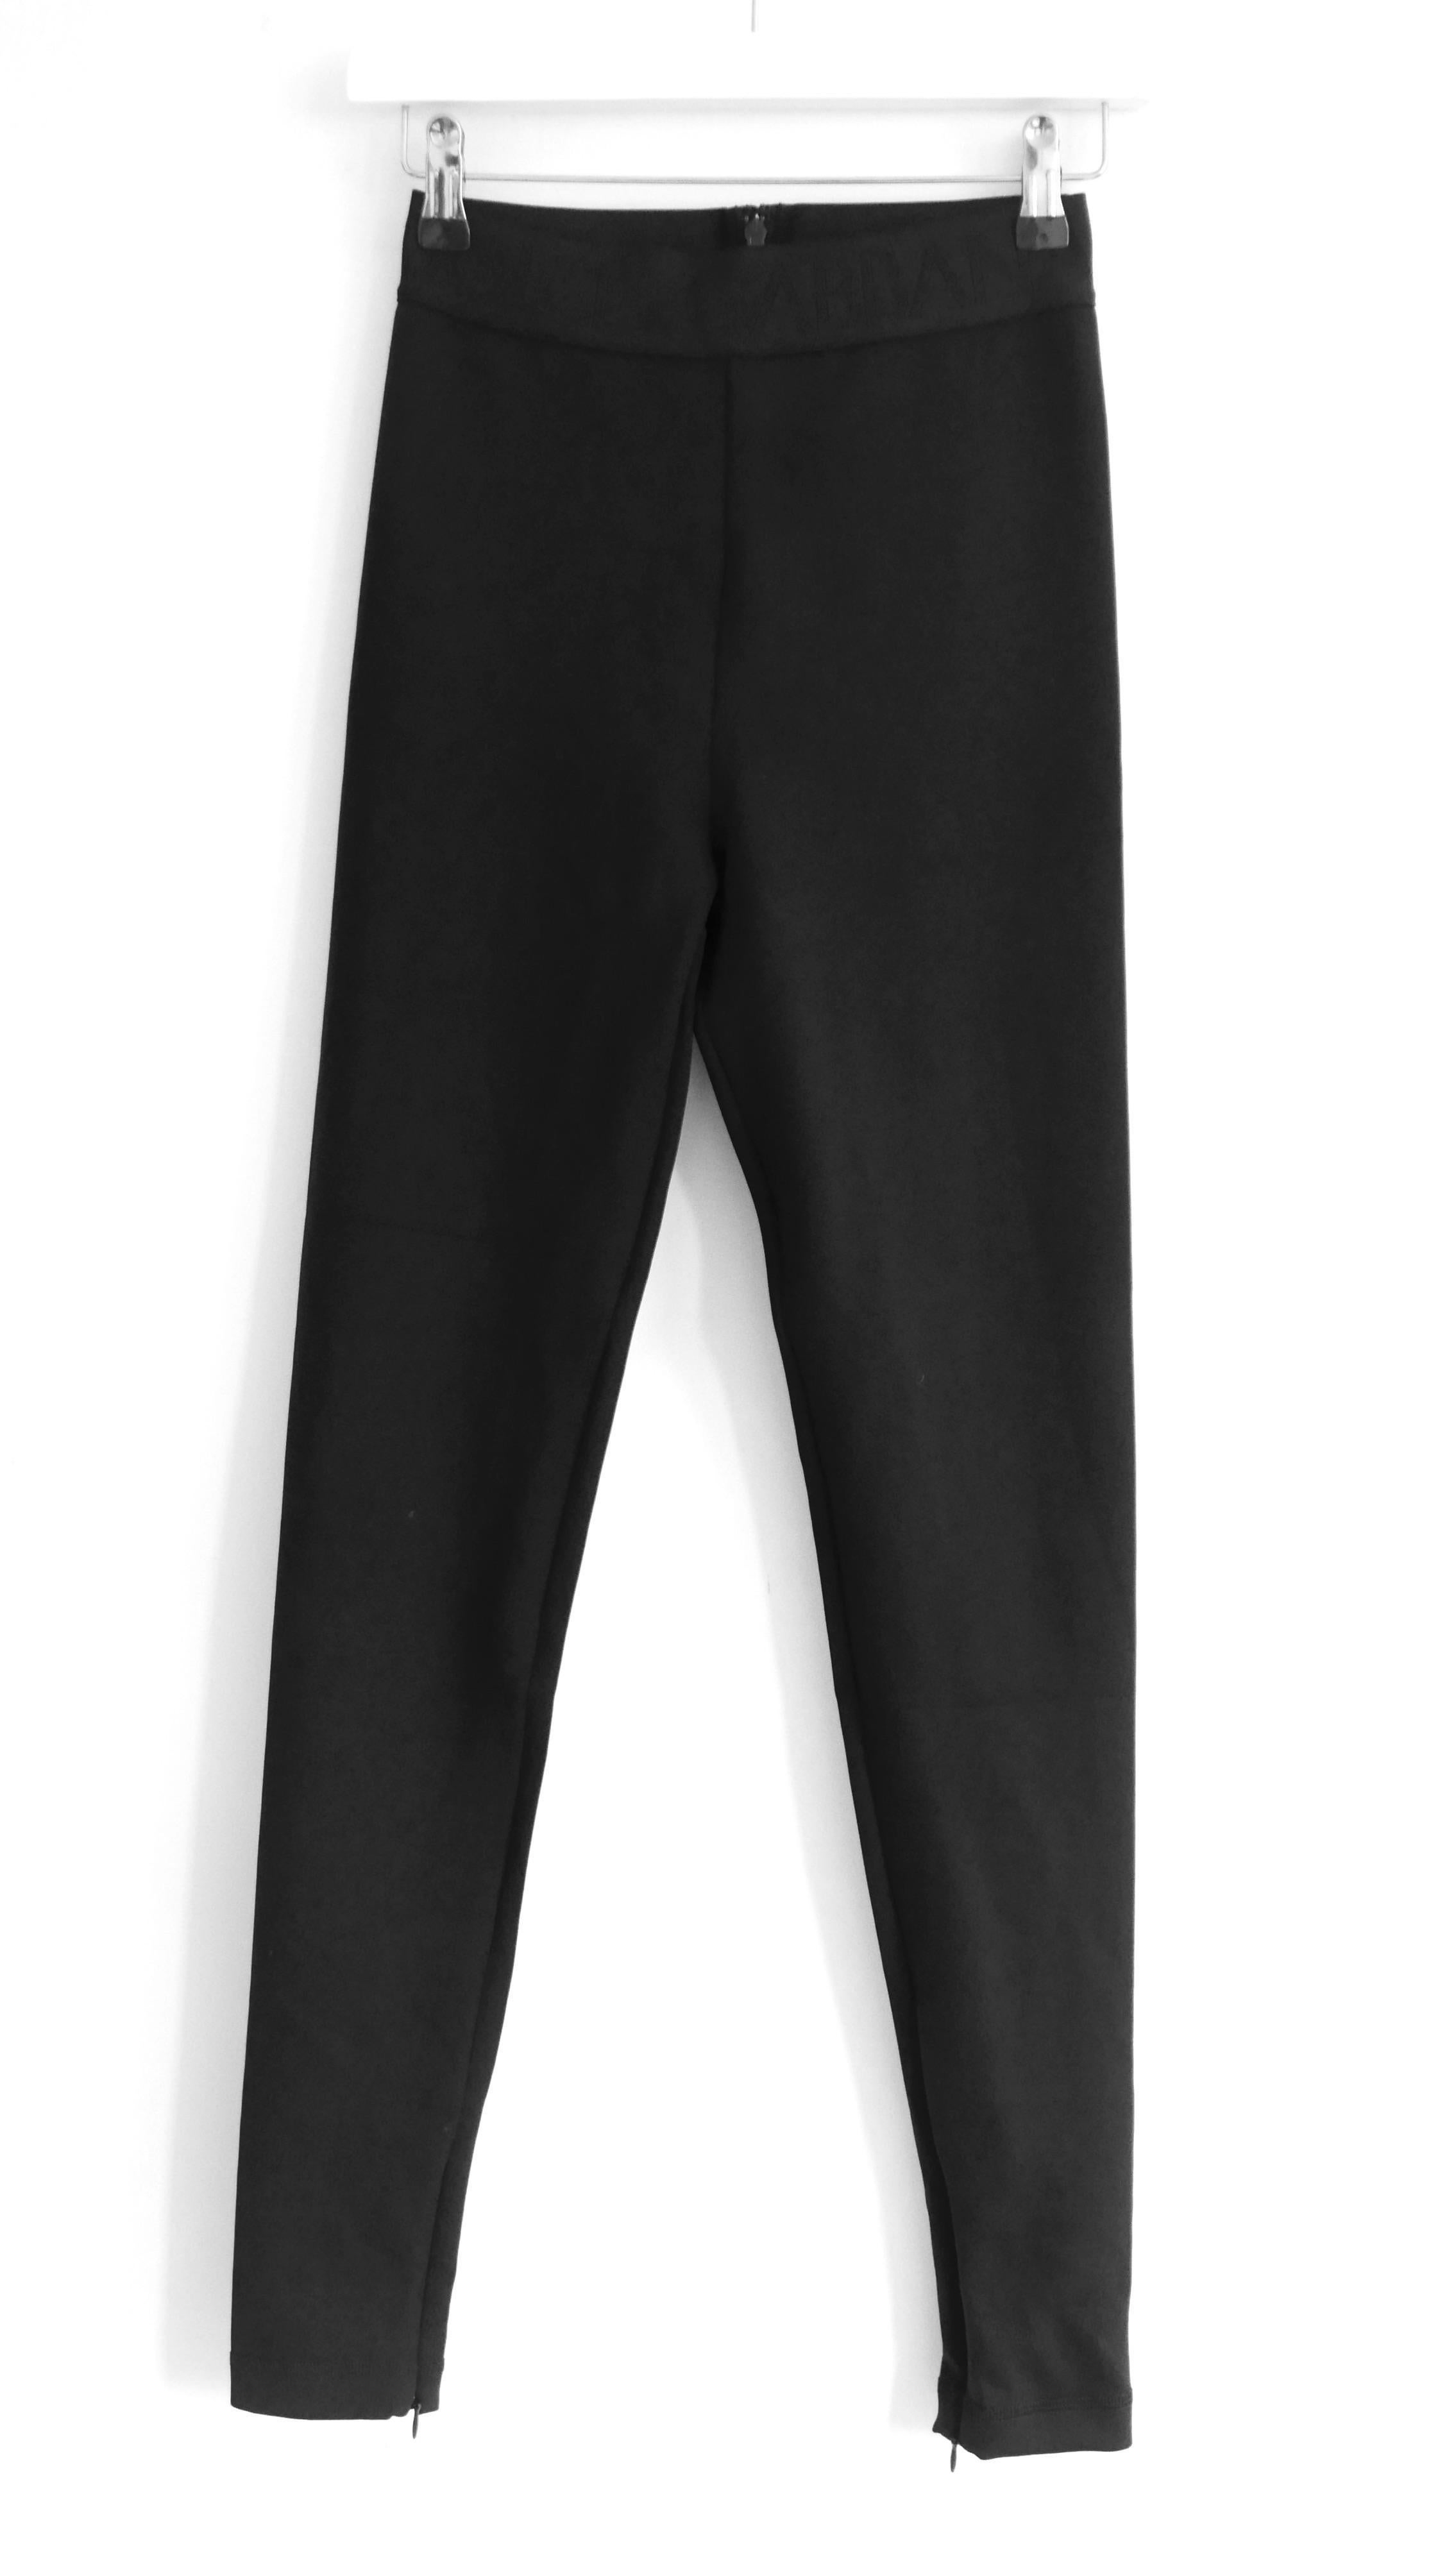 Super sexy Dolce & Gabbana Logo Taille Leggings - gekauft für £ 575 und neu mit Tags. Aus superglattem Stretch-Nylon und Elastan mit dezentem, tonalem Logobund. Sie sind hoch tailliert, haben Reißverschlussschlitze an den Knöcheln und einen